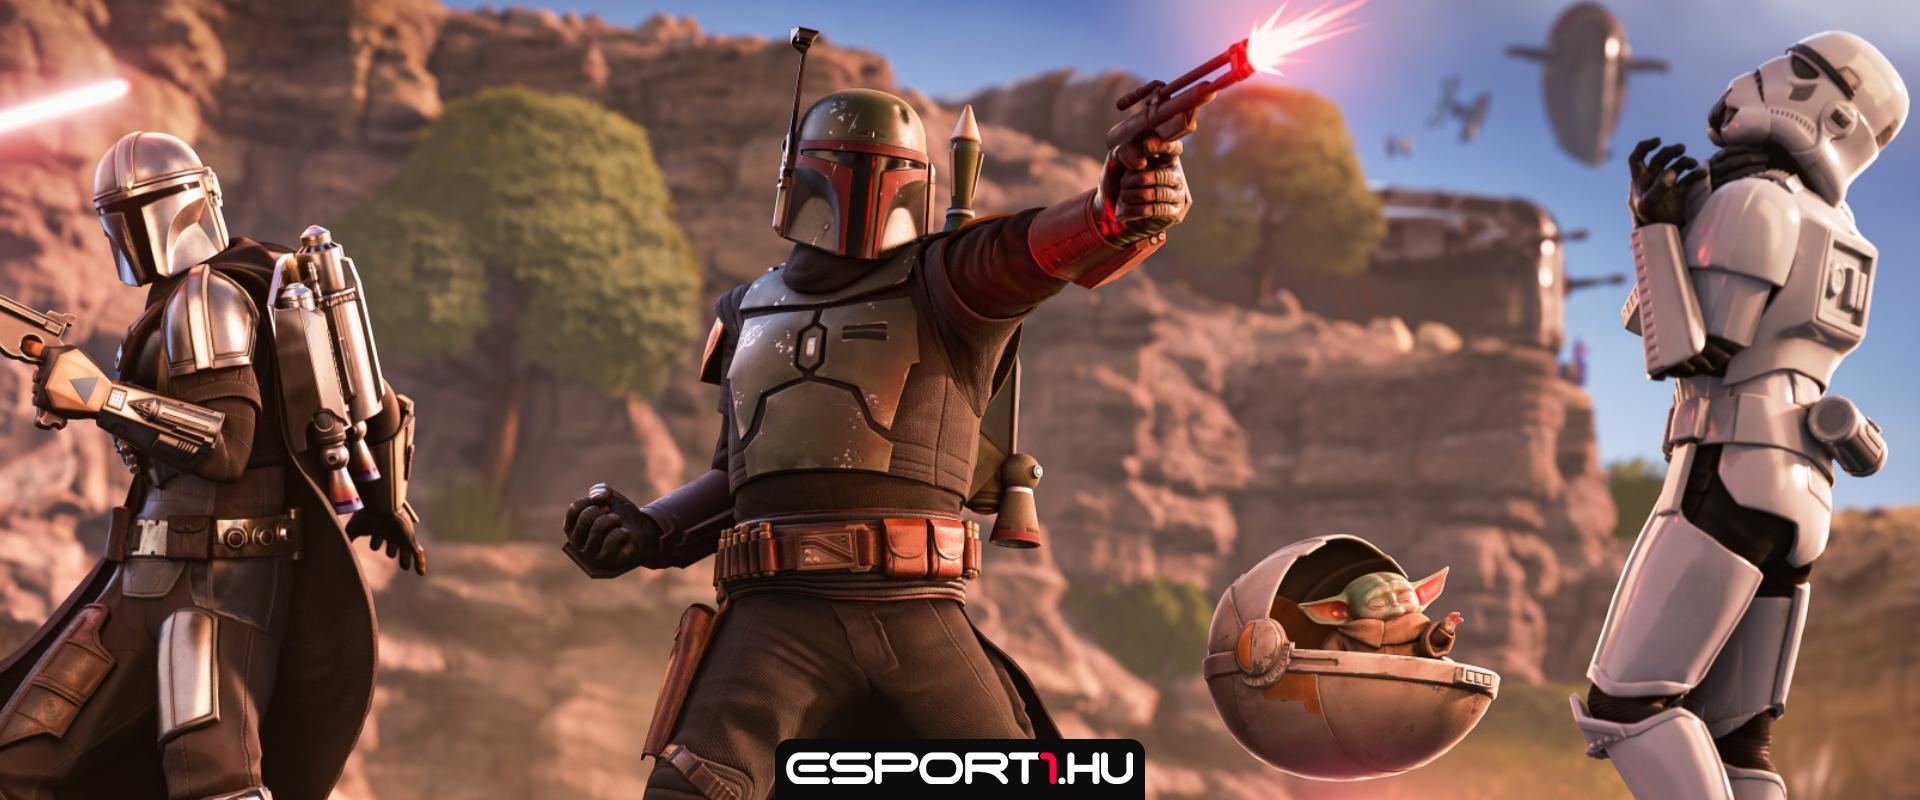 Fortnite: Ezekkel a Star Wars skinekkel futhatunk össze a játékban